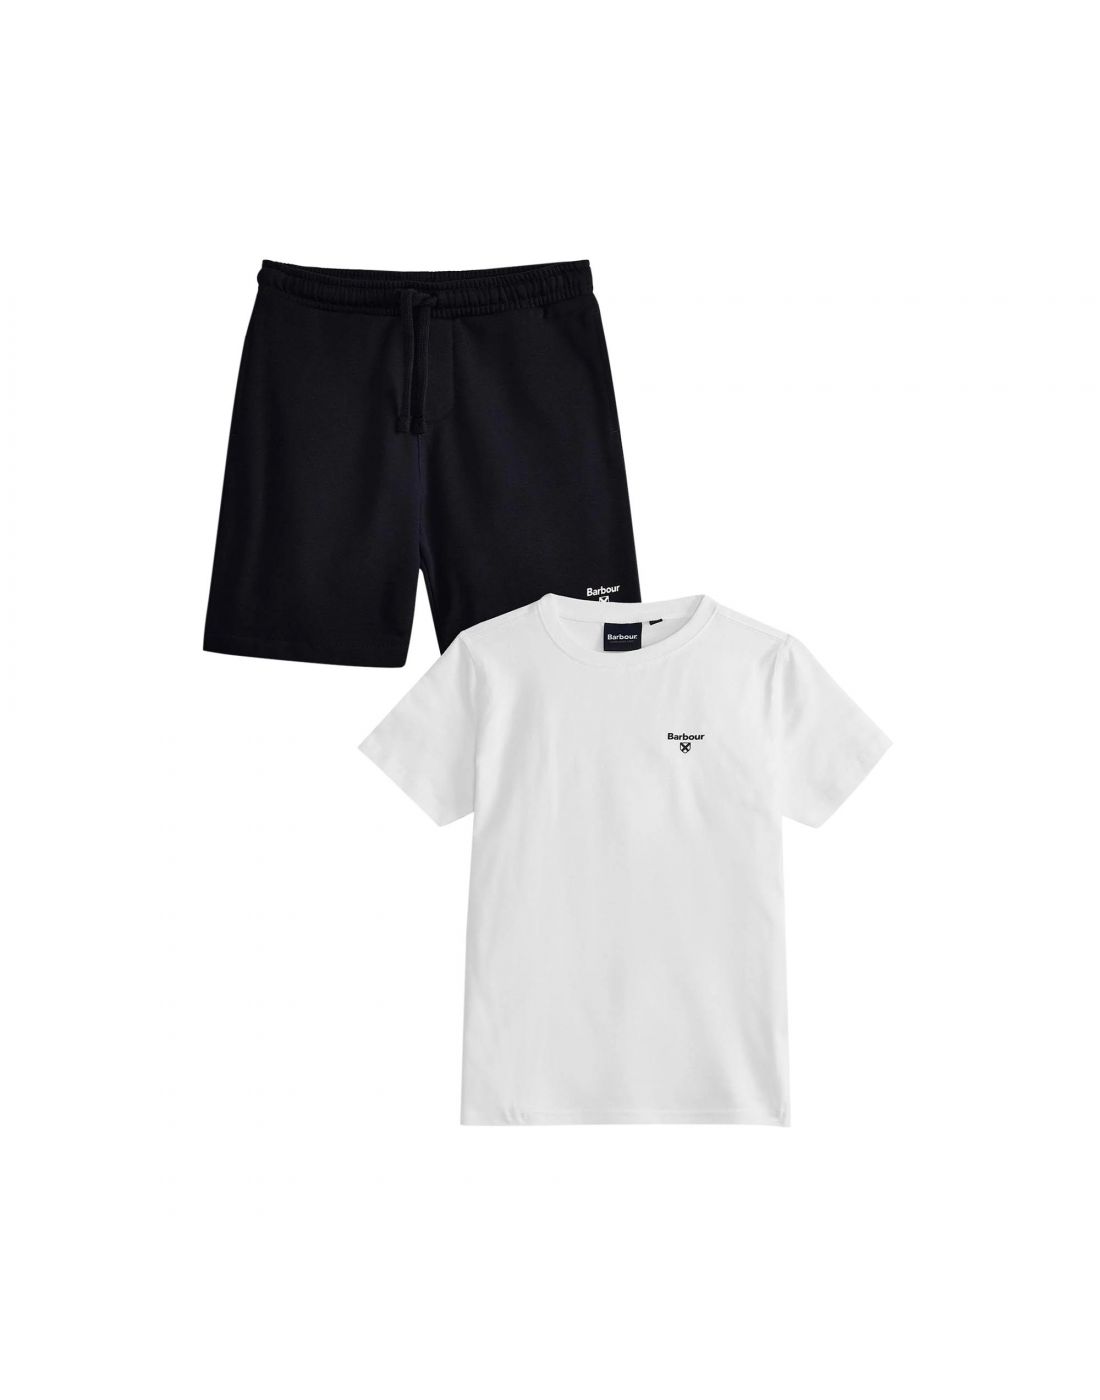 Barbour Boys' T-Shirt & Shorts Set